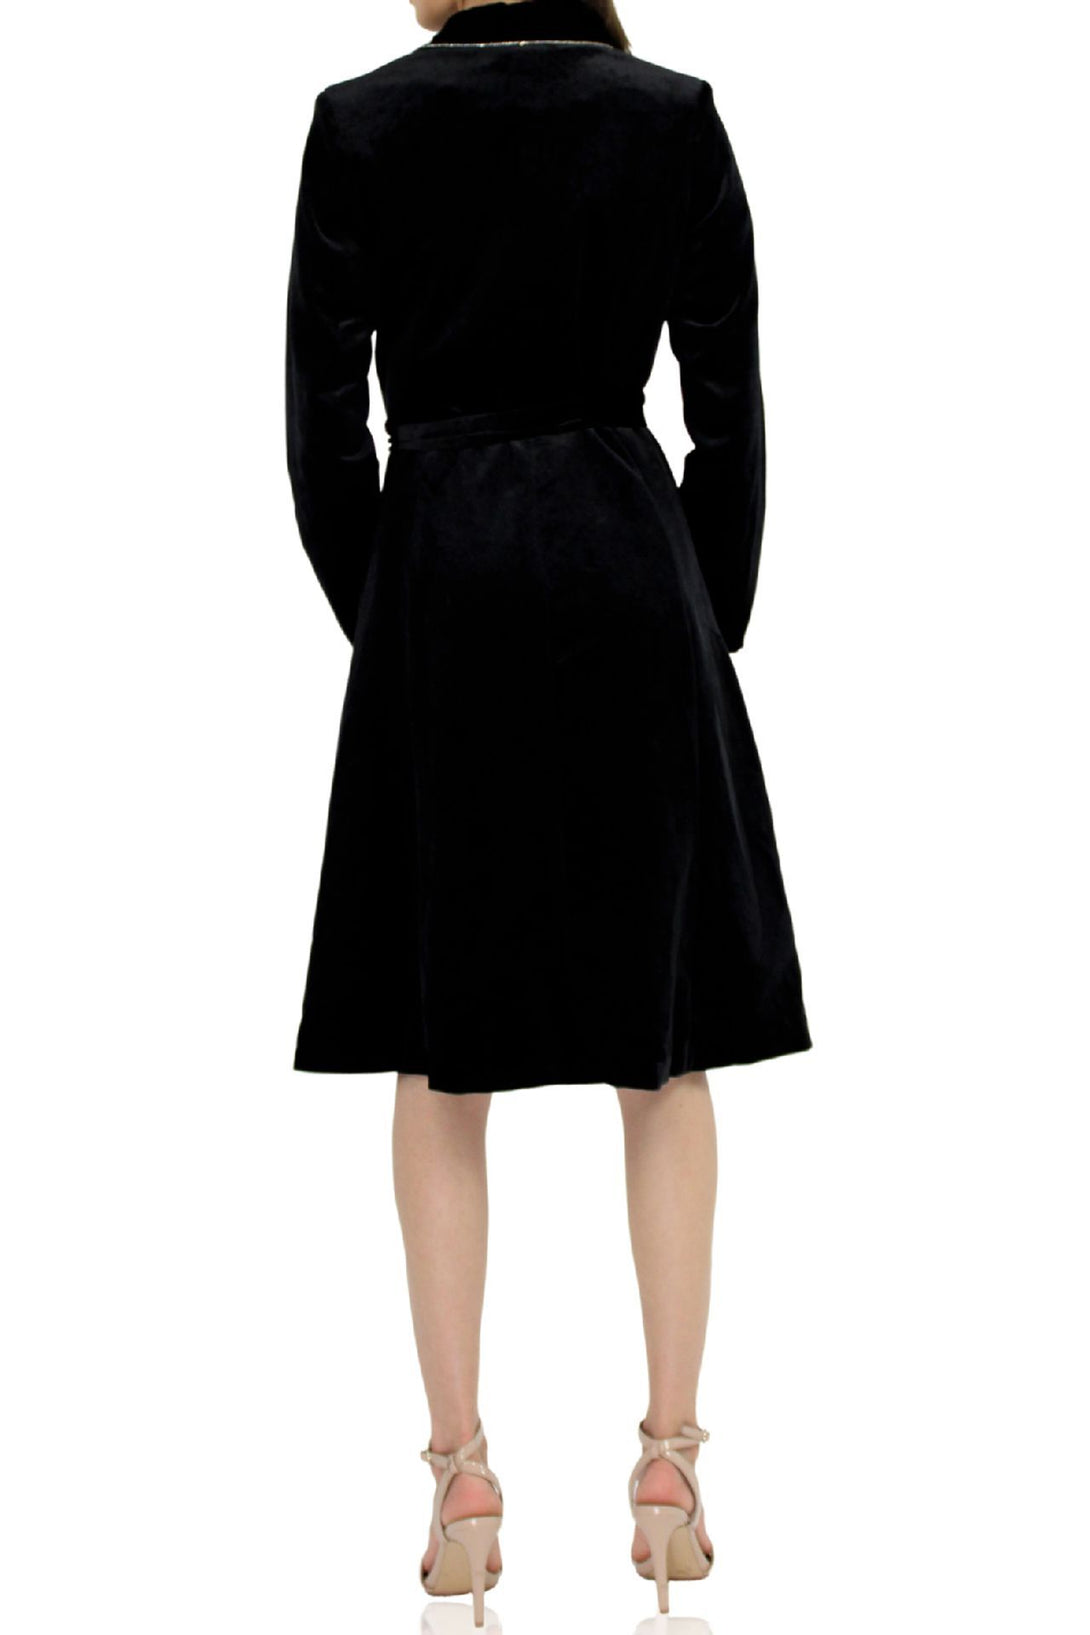 Designer-Black-Robe-Dress-For-Women-By-Kyle-Richard